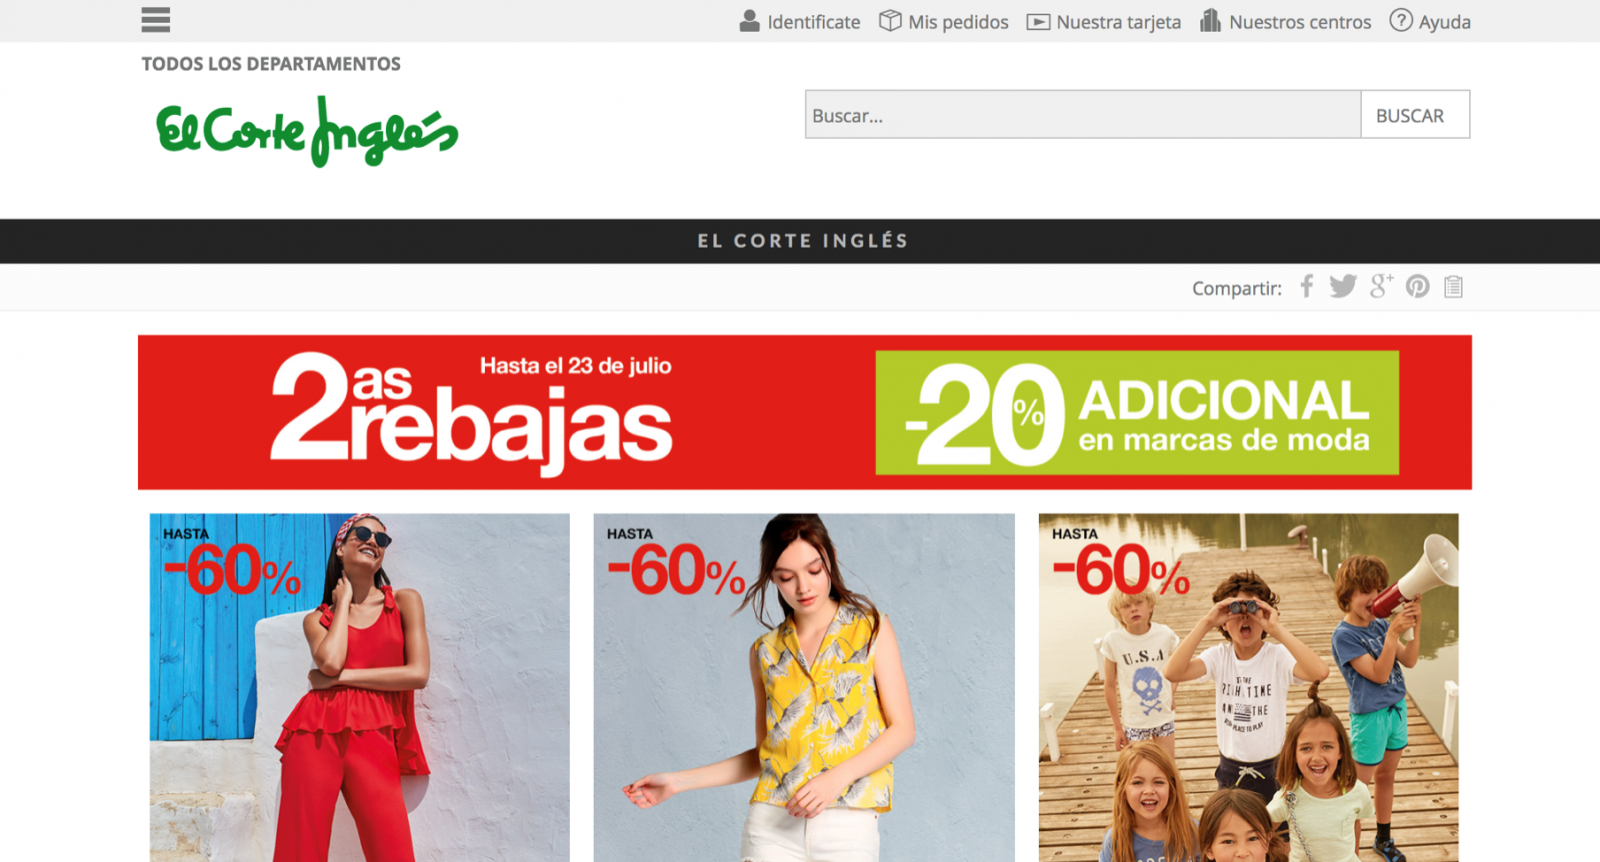 Las tiendas online que más venden España wildwildweb.es